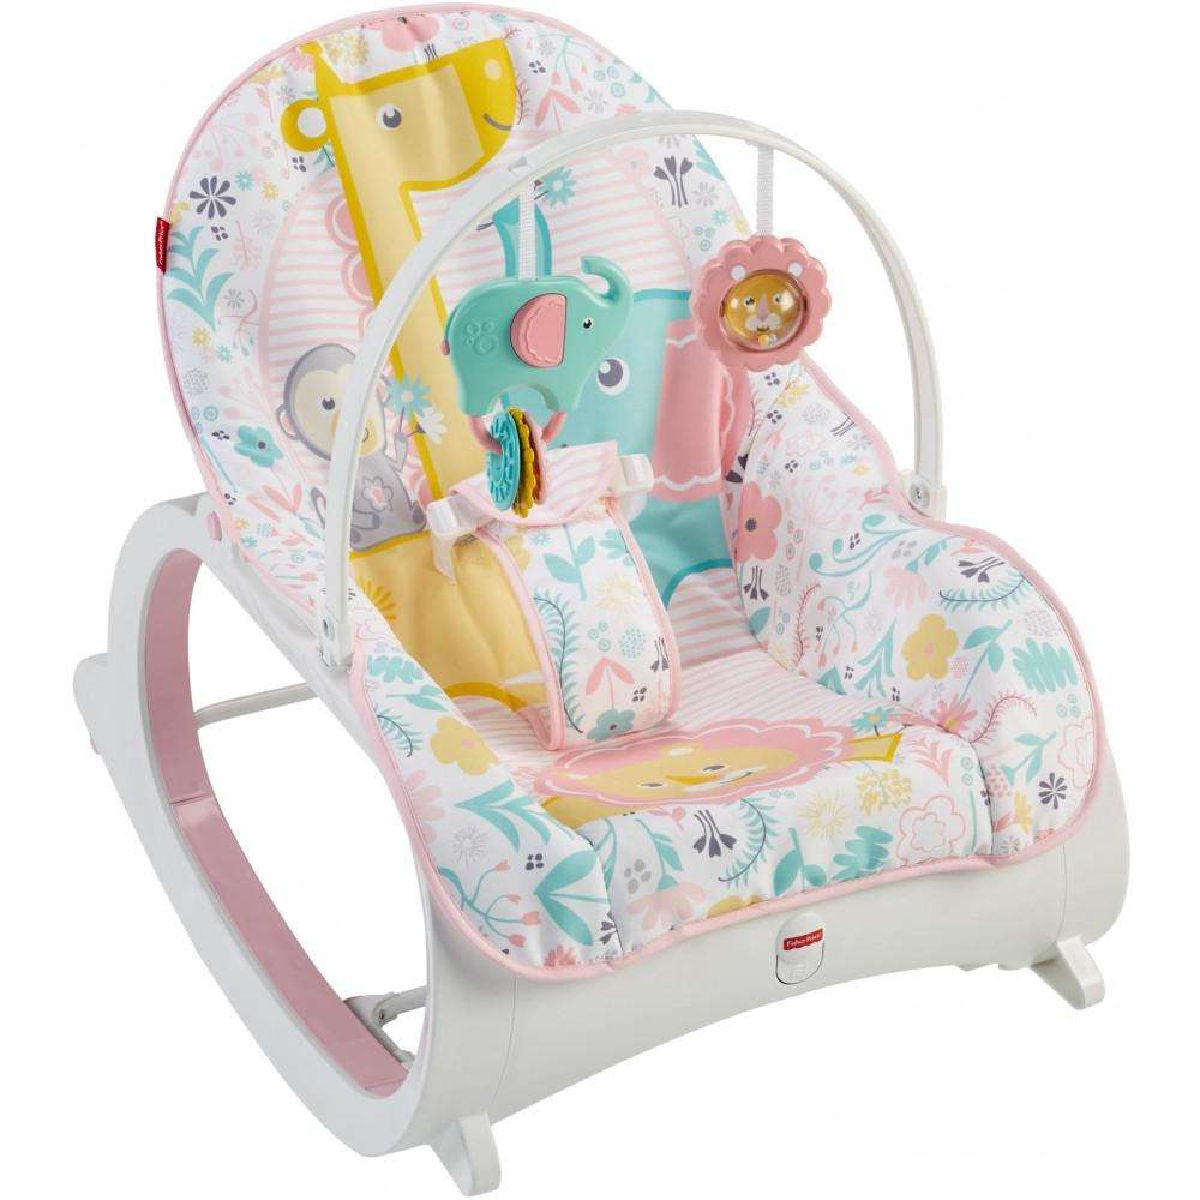 Fisher-Price Infant-To-Toddler Rocker Pastel Pink